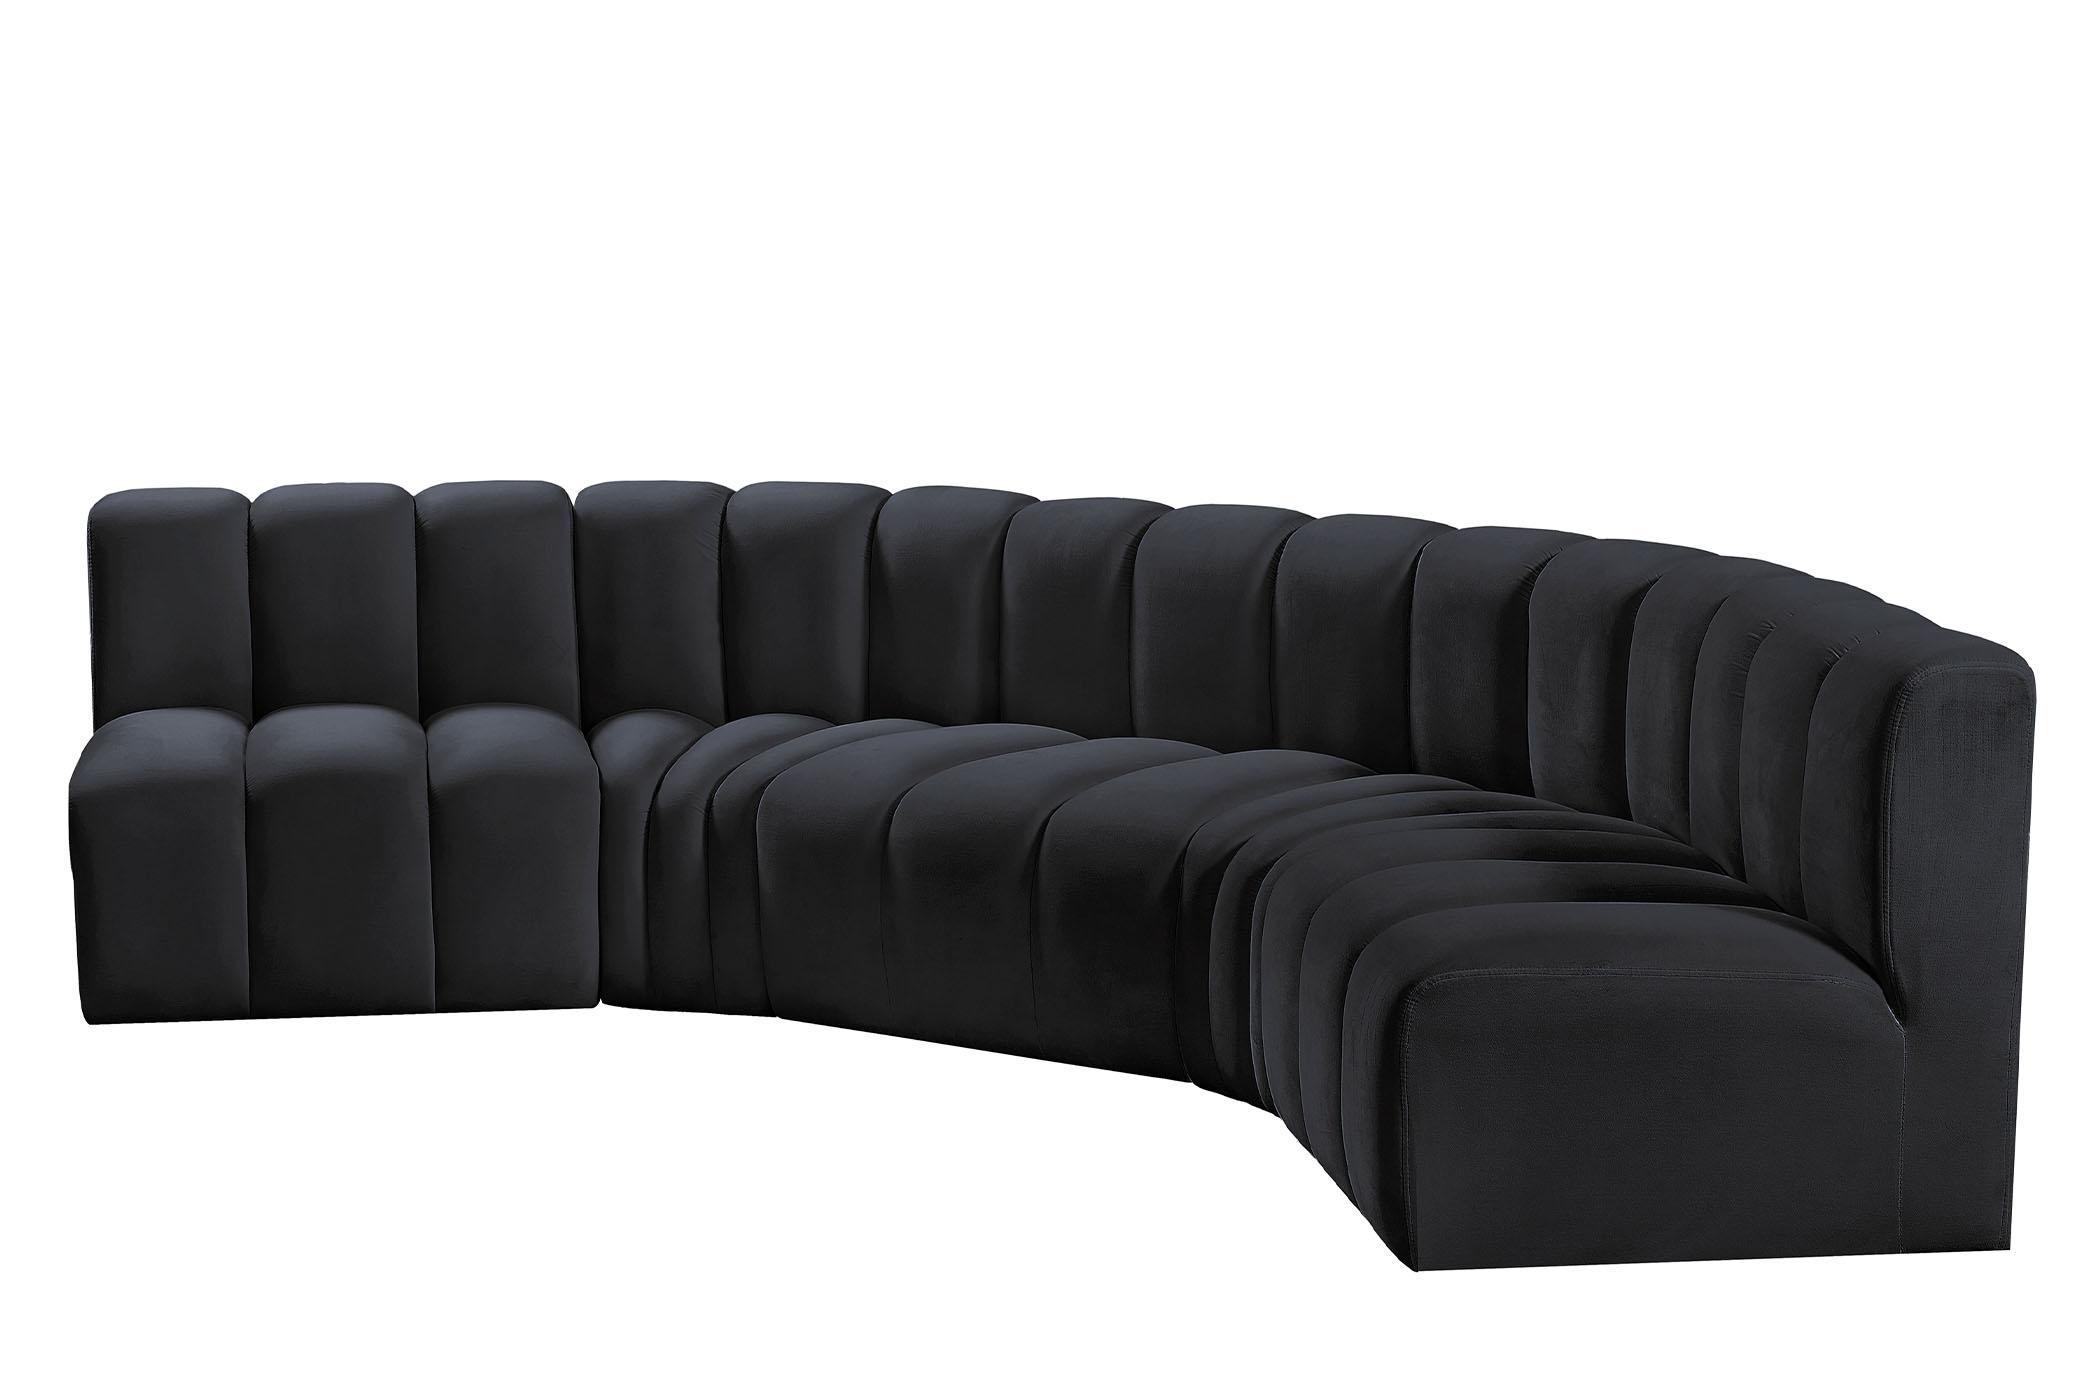 

    
103Black-S5A Meridian Furniture Modular Sectional Sofa
